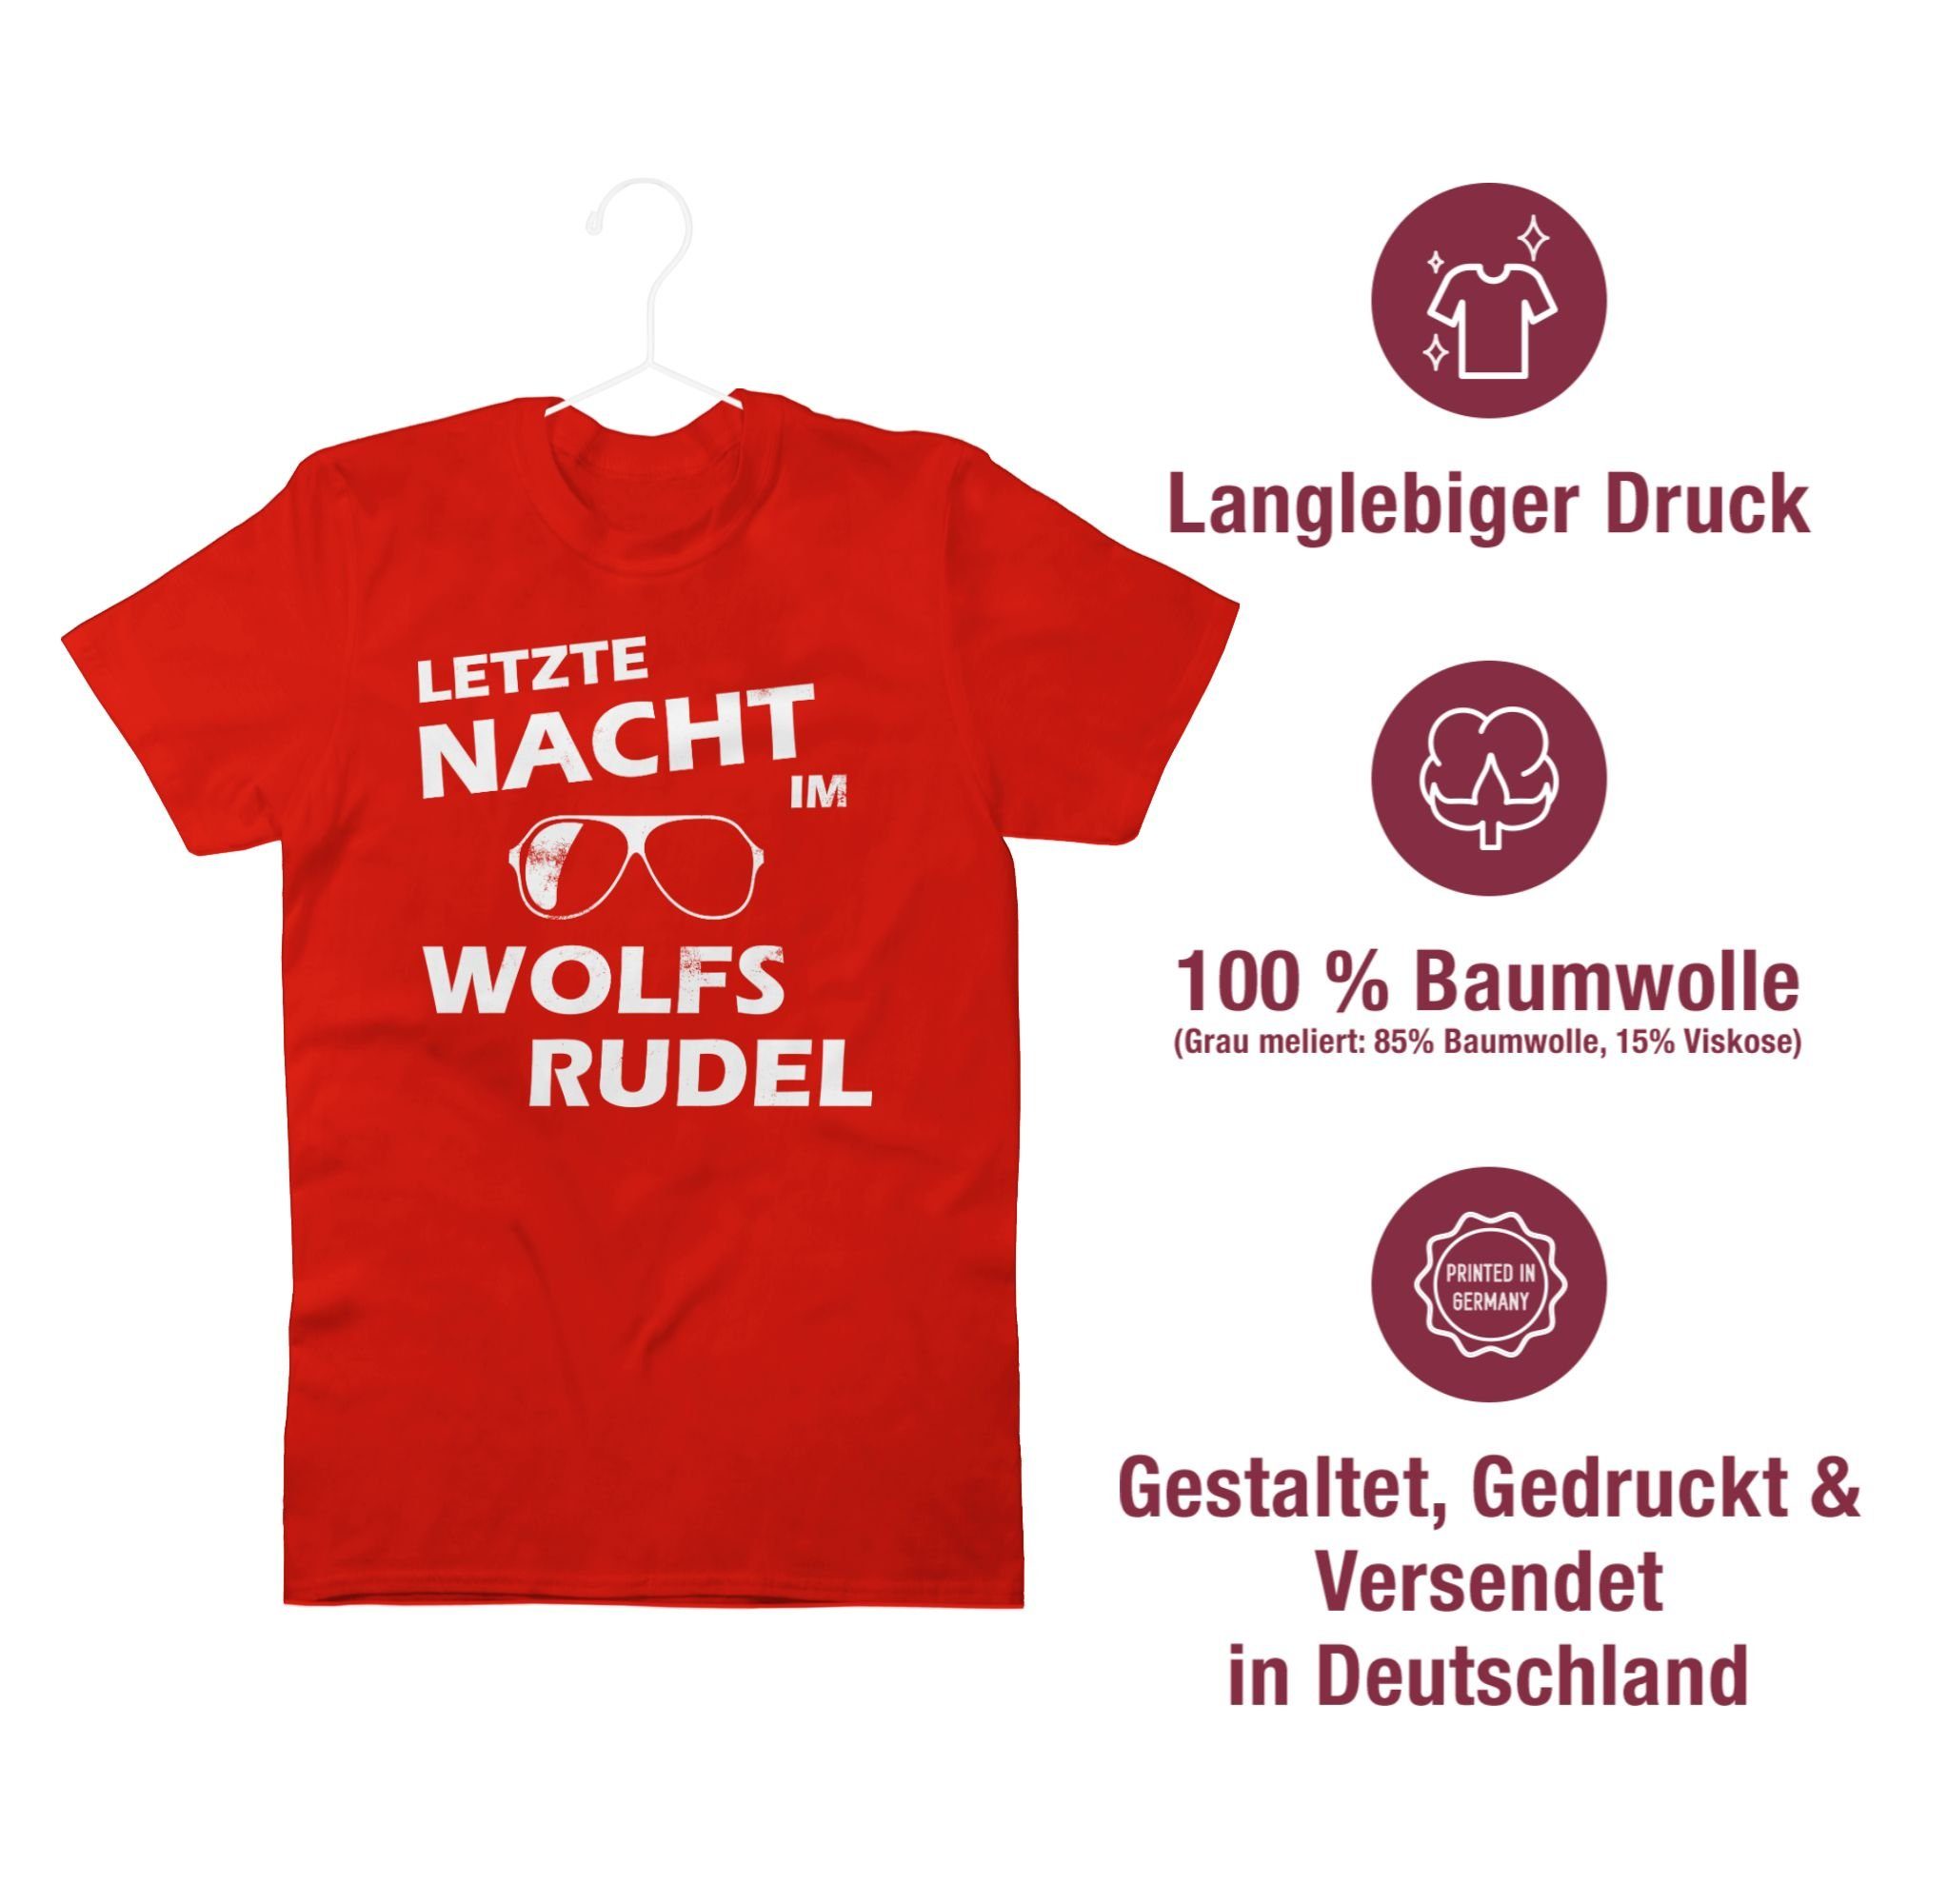 im JGA Männer Rot Shirtracer Nacht Hangover Letzte 2 Wolfsrudel - T-Shirt